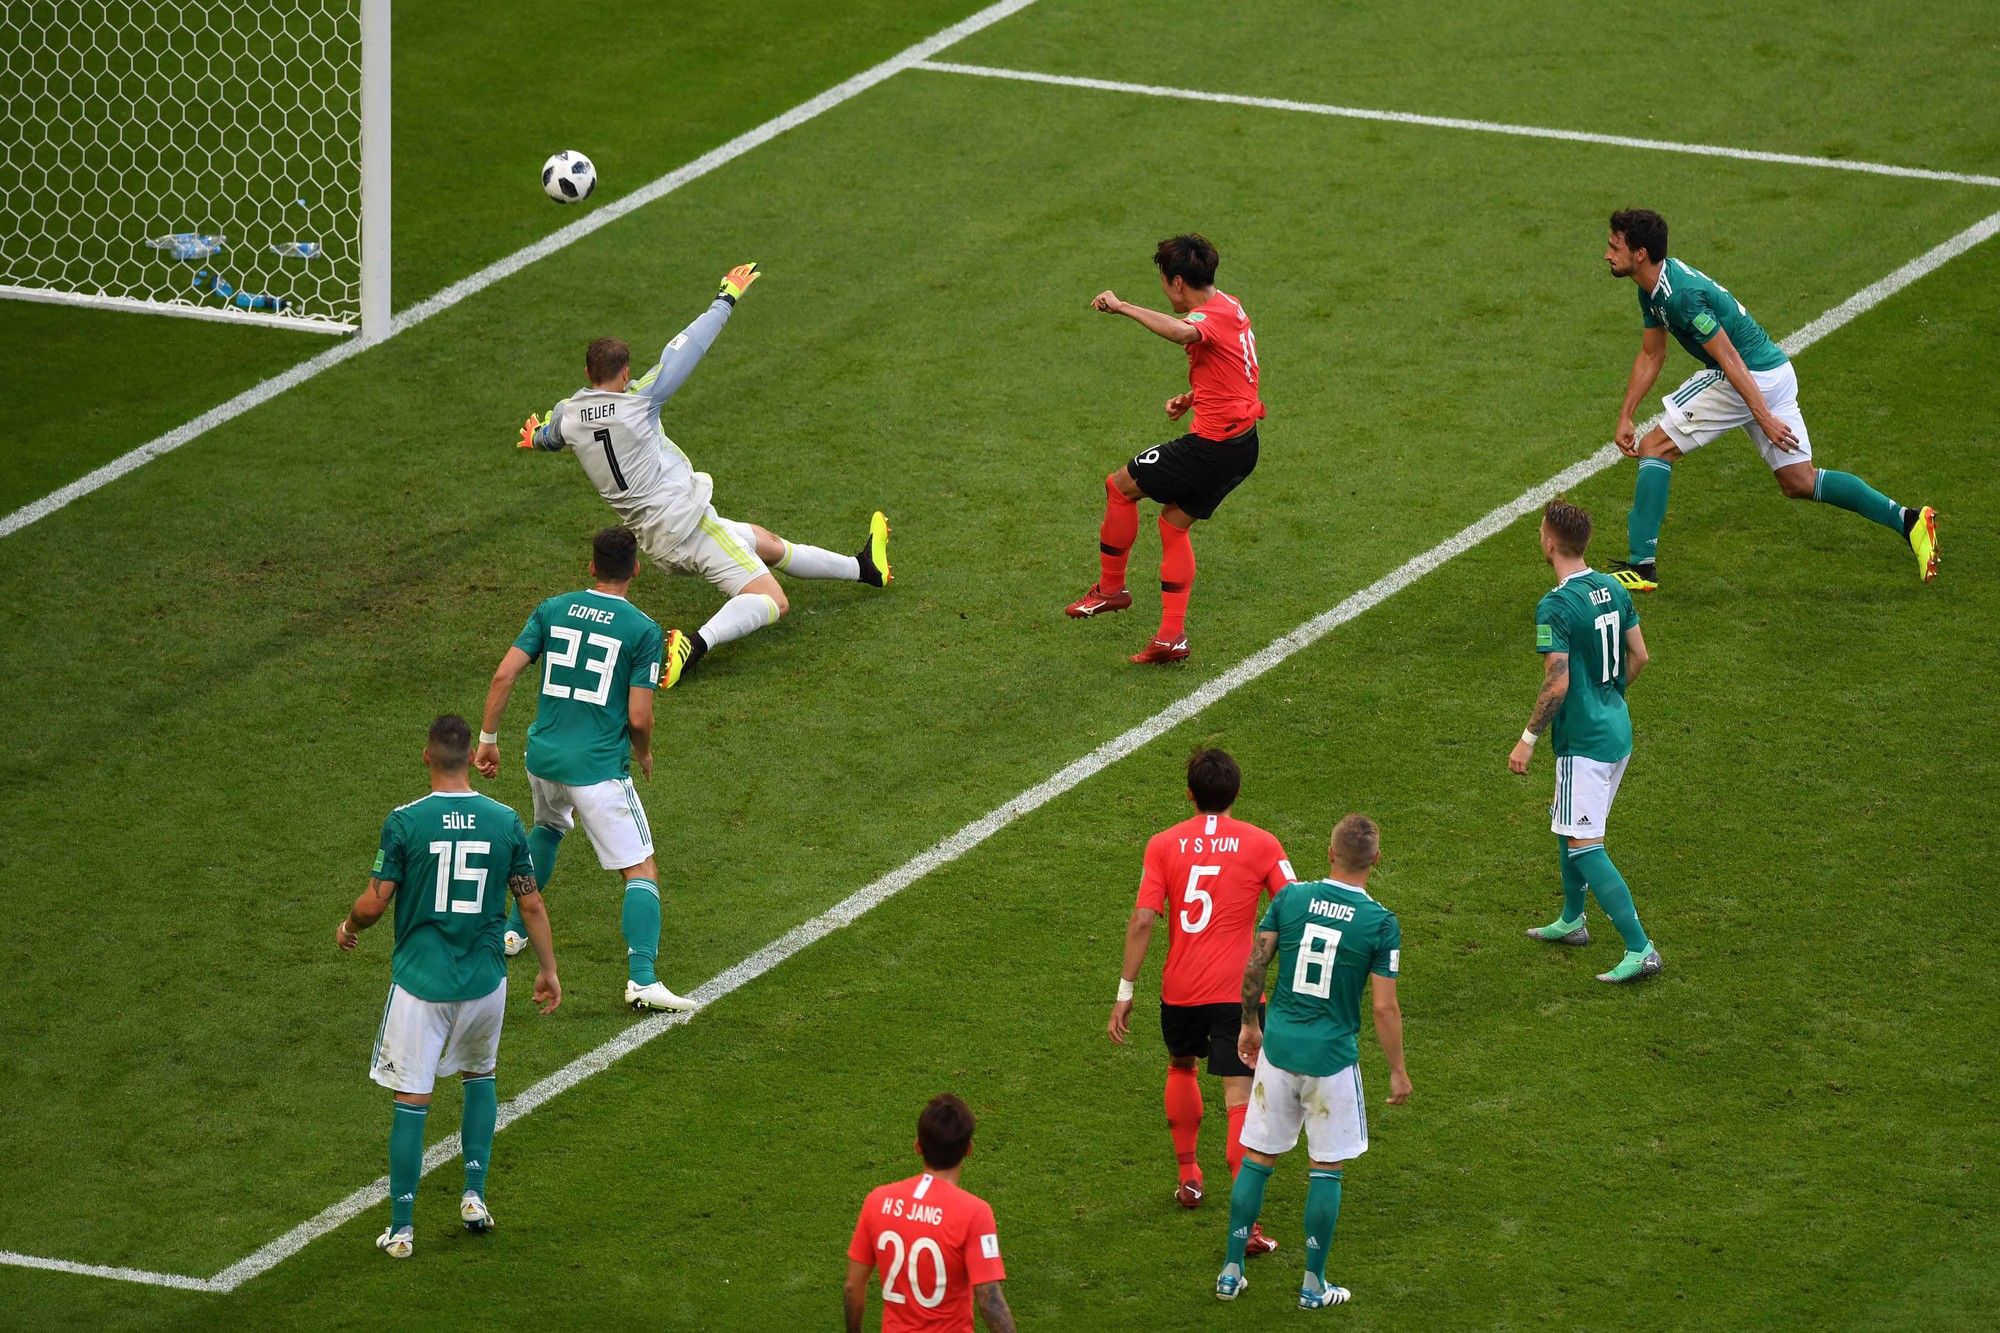 Cầu thủ Hàn Quốc bật khóc, vỡ òa sau chiến tích loại nhà vô địch Đức - Ảnh 1.